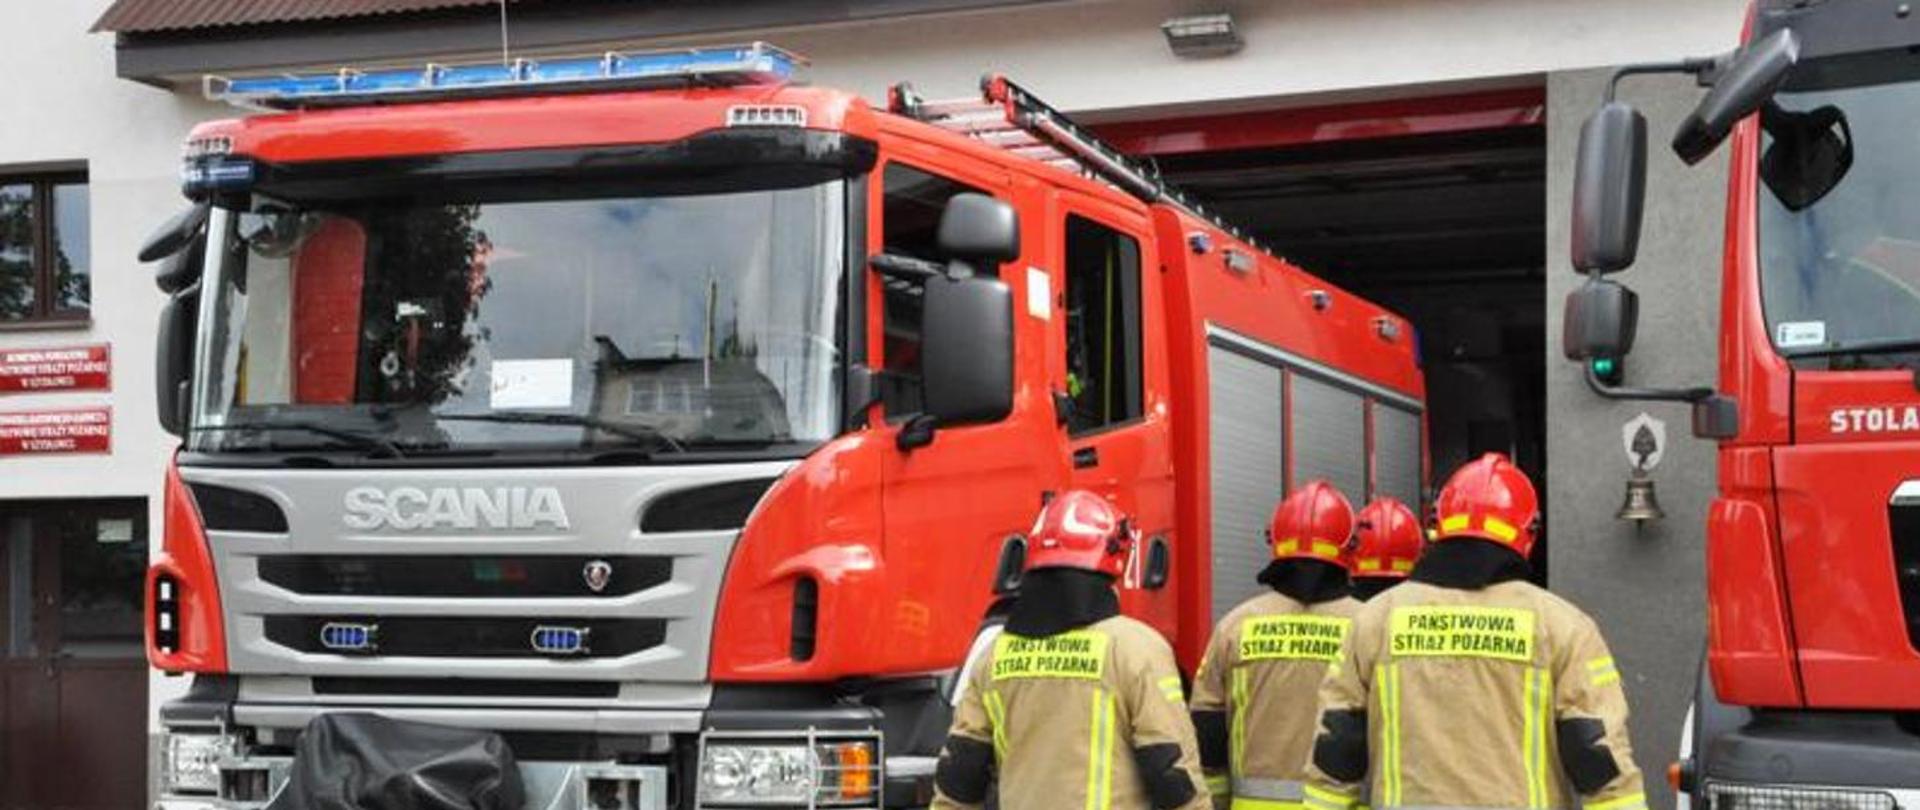 Fotografia przedstawiająca średni samochód ratowniczo-gaśniczy na tle Jednostki Ratowniczo-Gaśniczej oraz strażaków Państwowej Straży Pożarnej ubranych w ubrania specjalne .